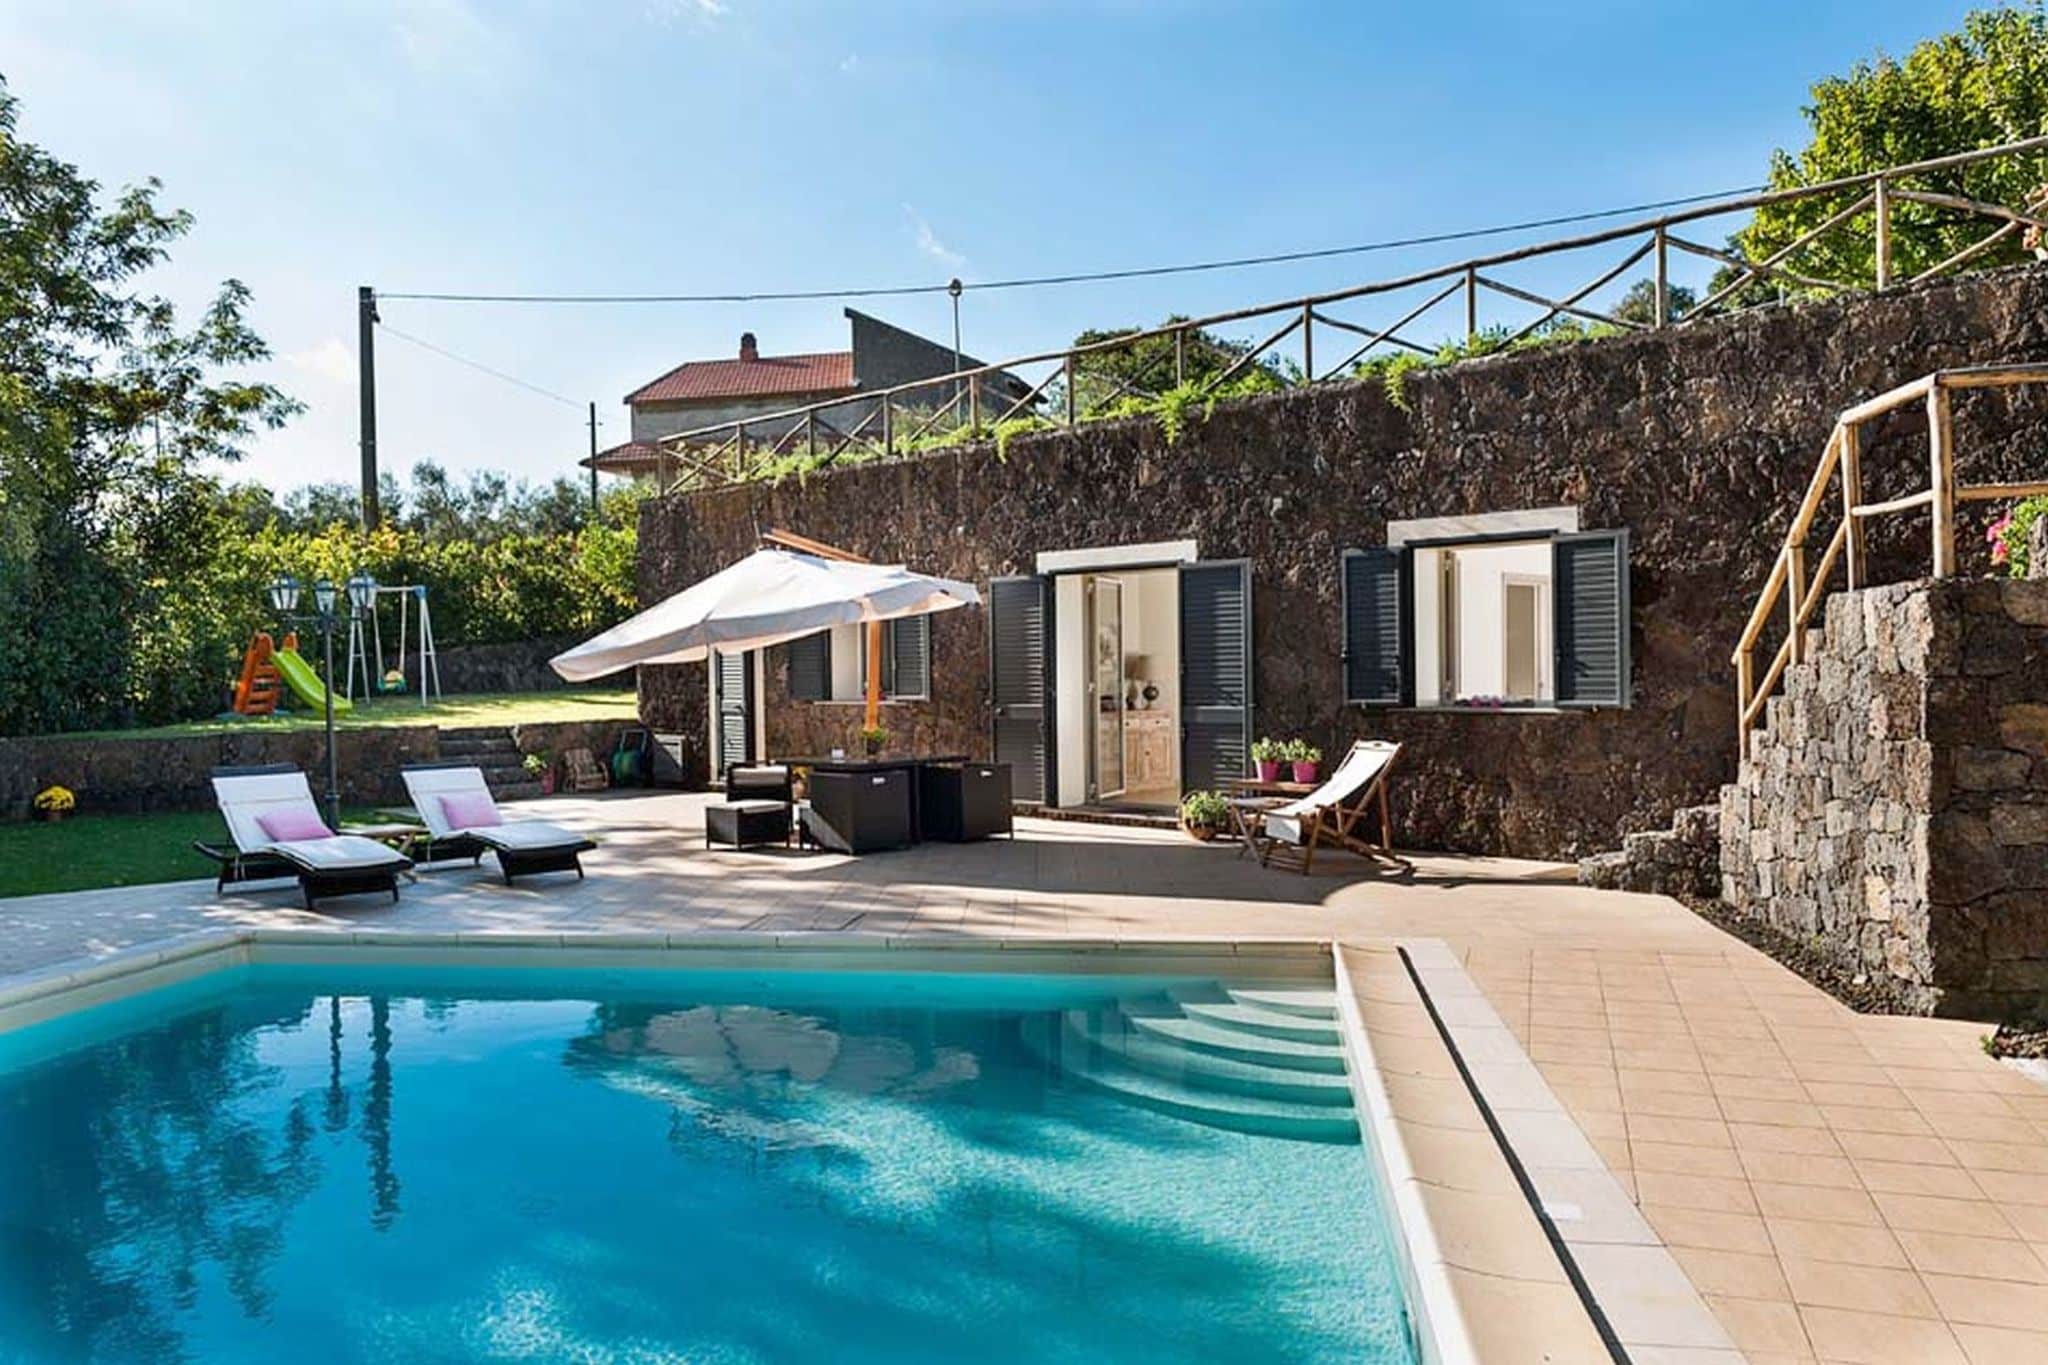 Charmantes kleines Ferienhaus mit Garten in Lazise, Italien